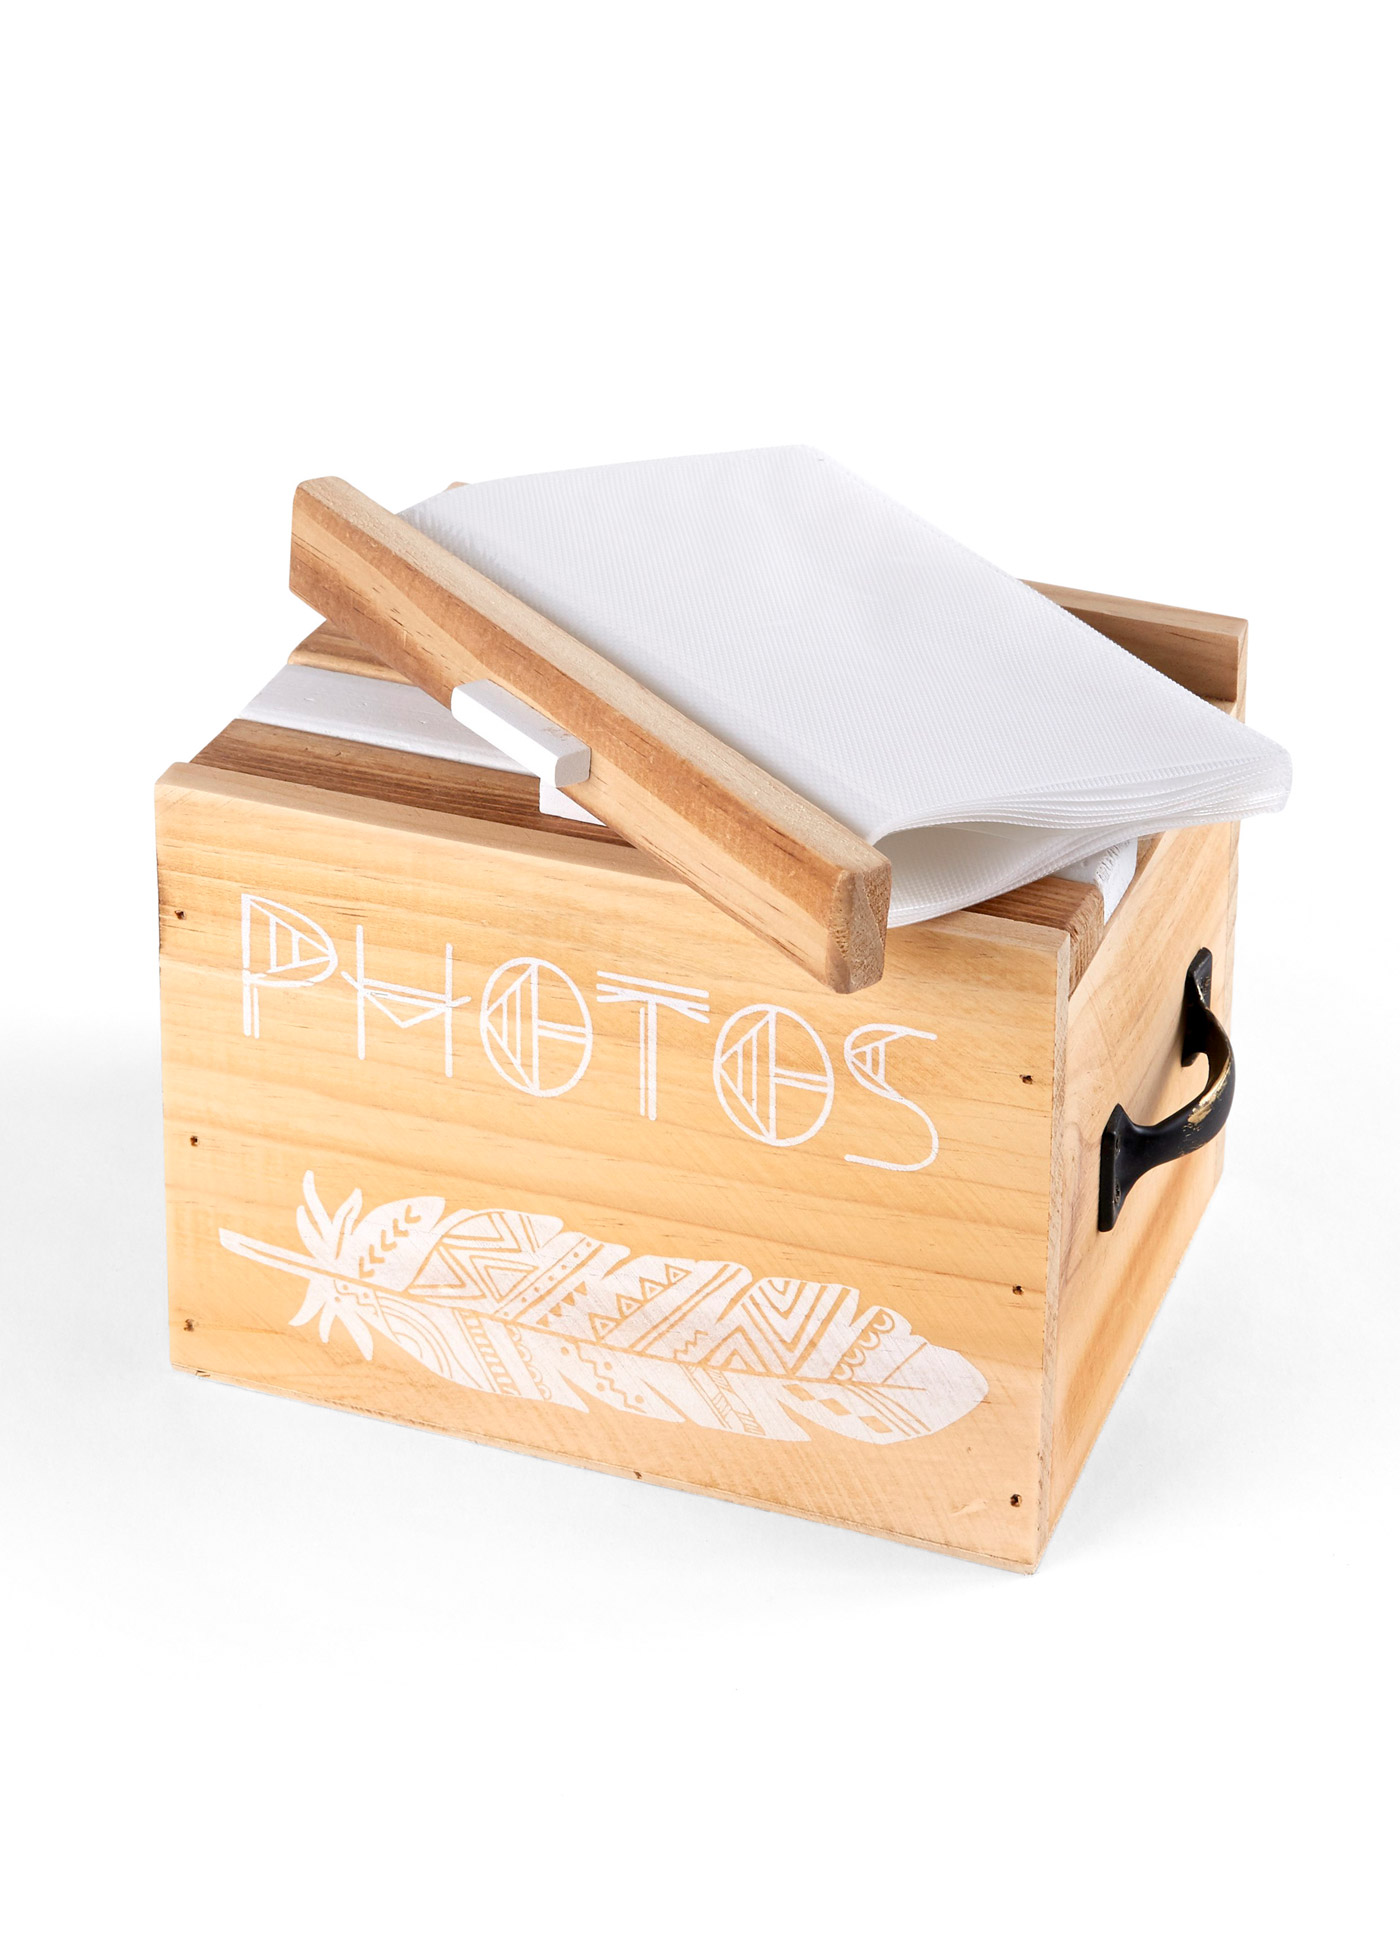 Fotoaufbewahrungsbox aus Holz